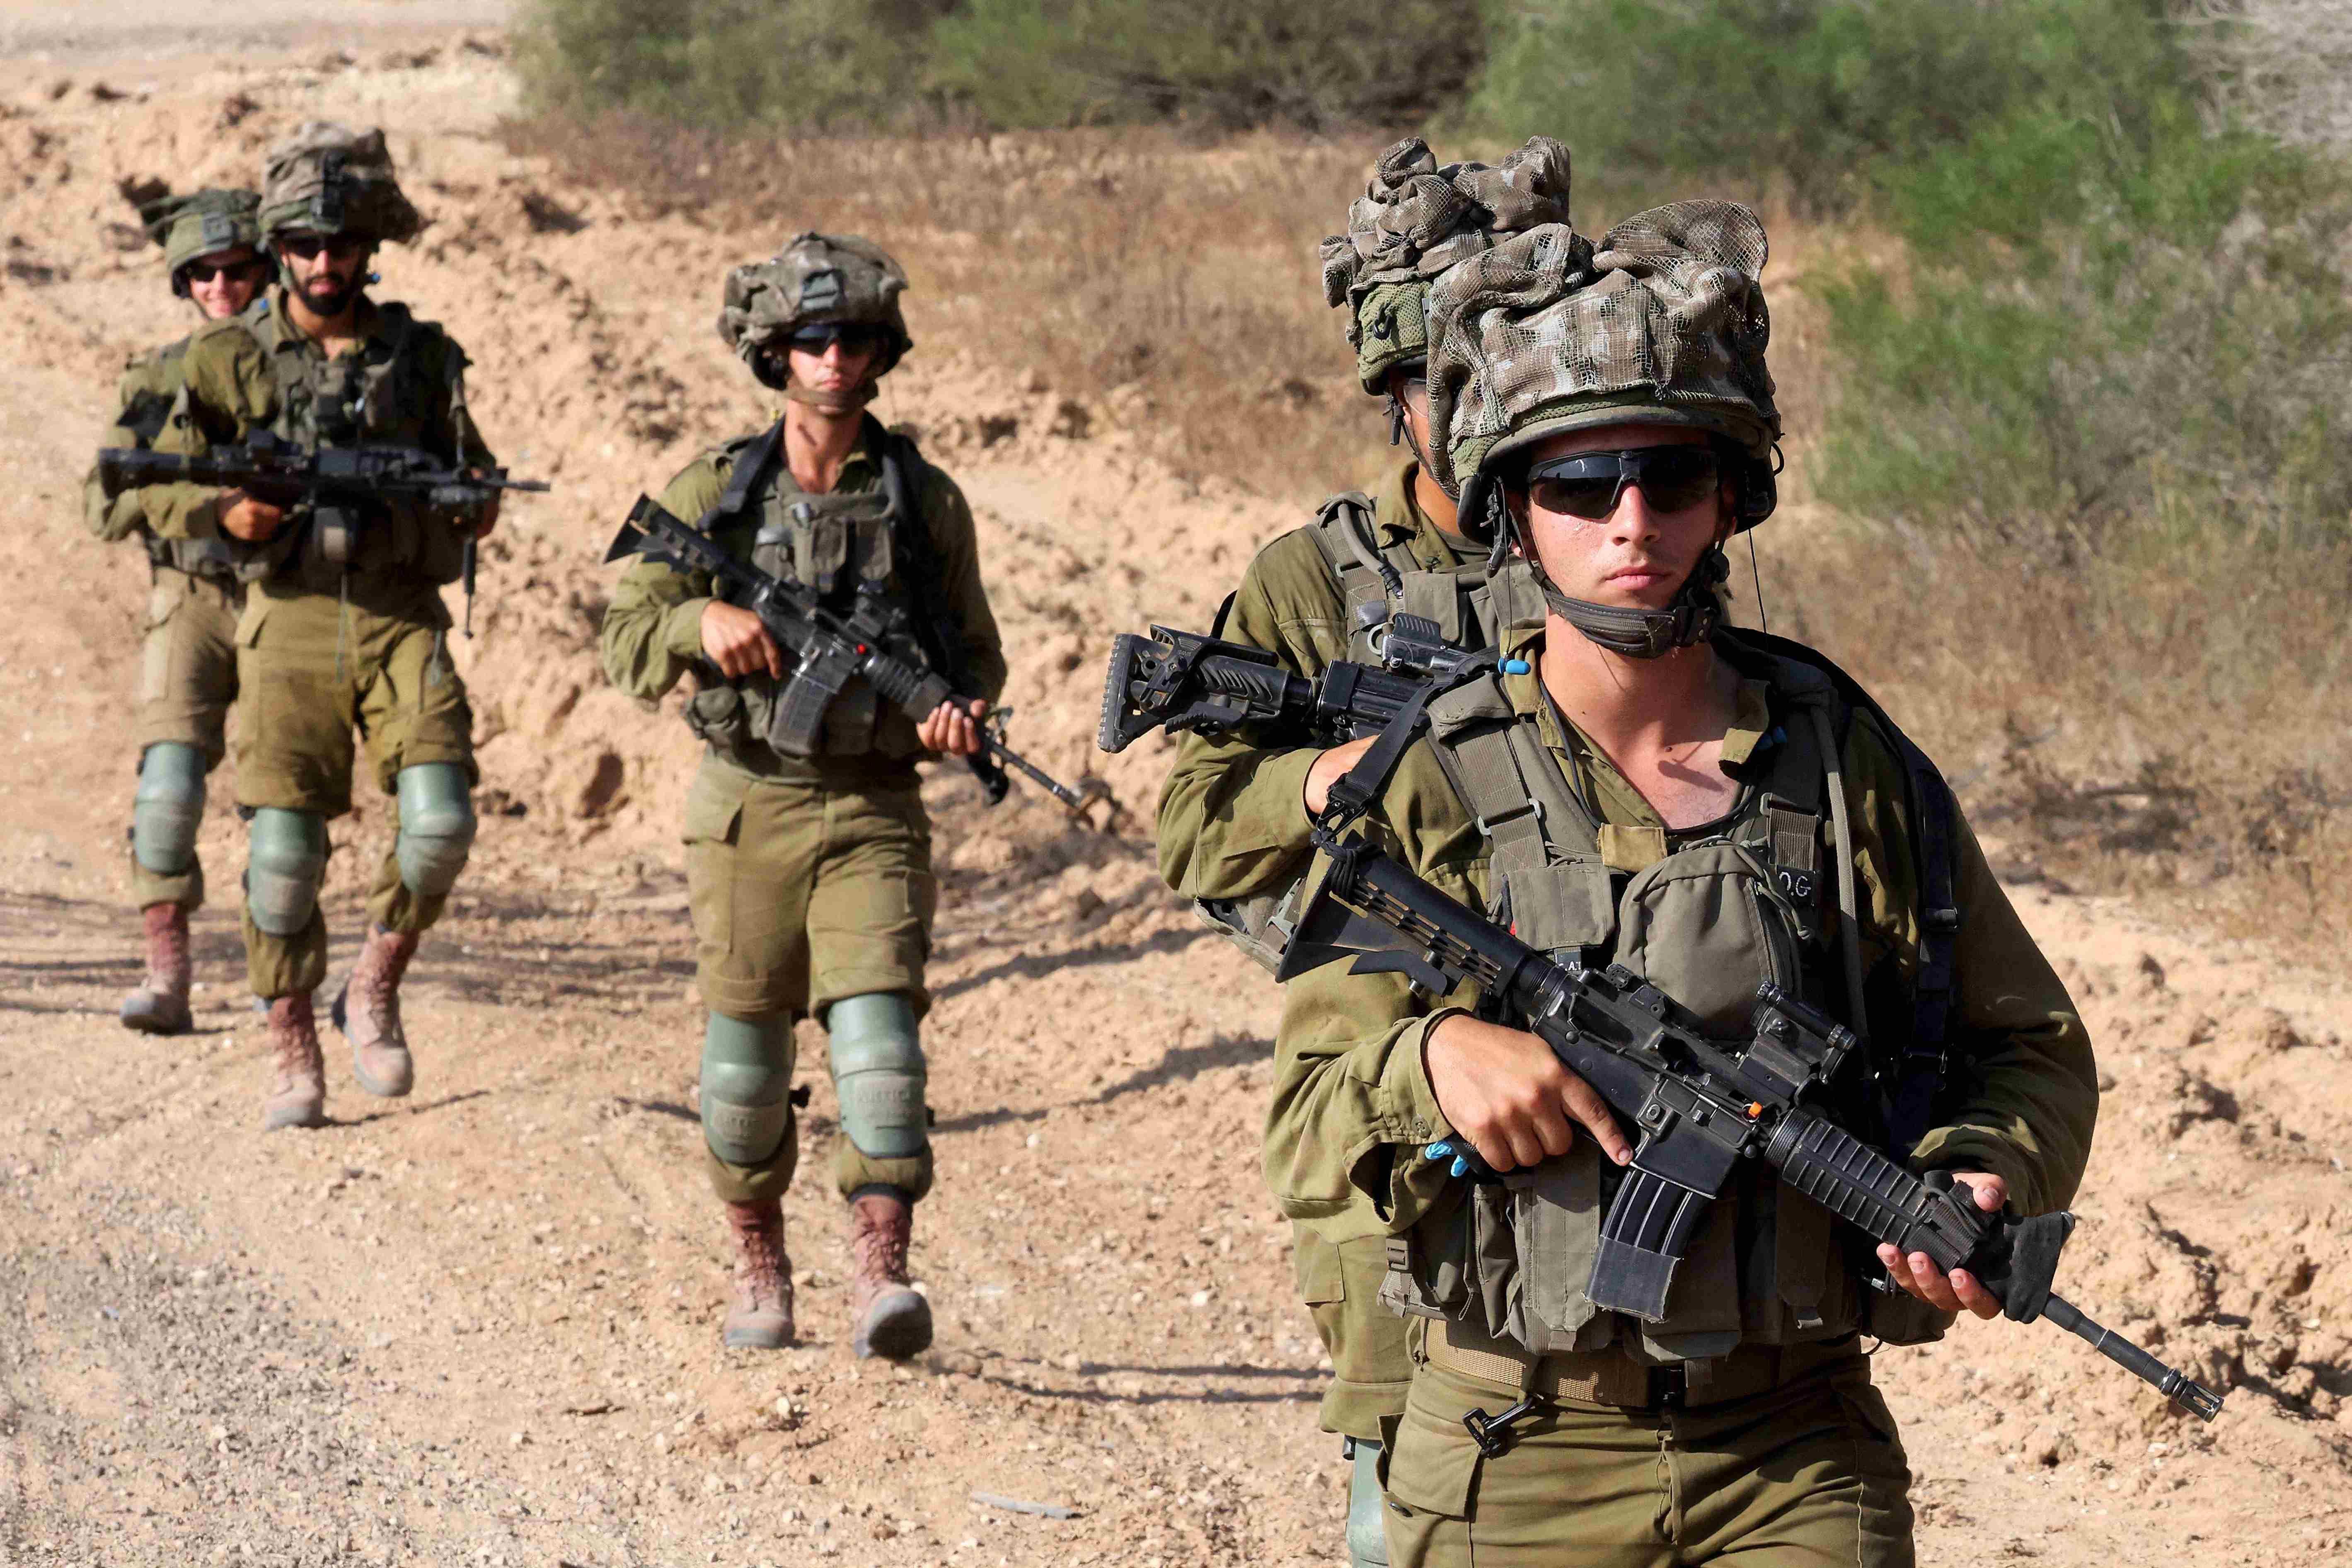 İsrail'in konuştuğu talimat: Derhal askere alın!